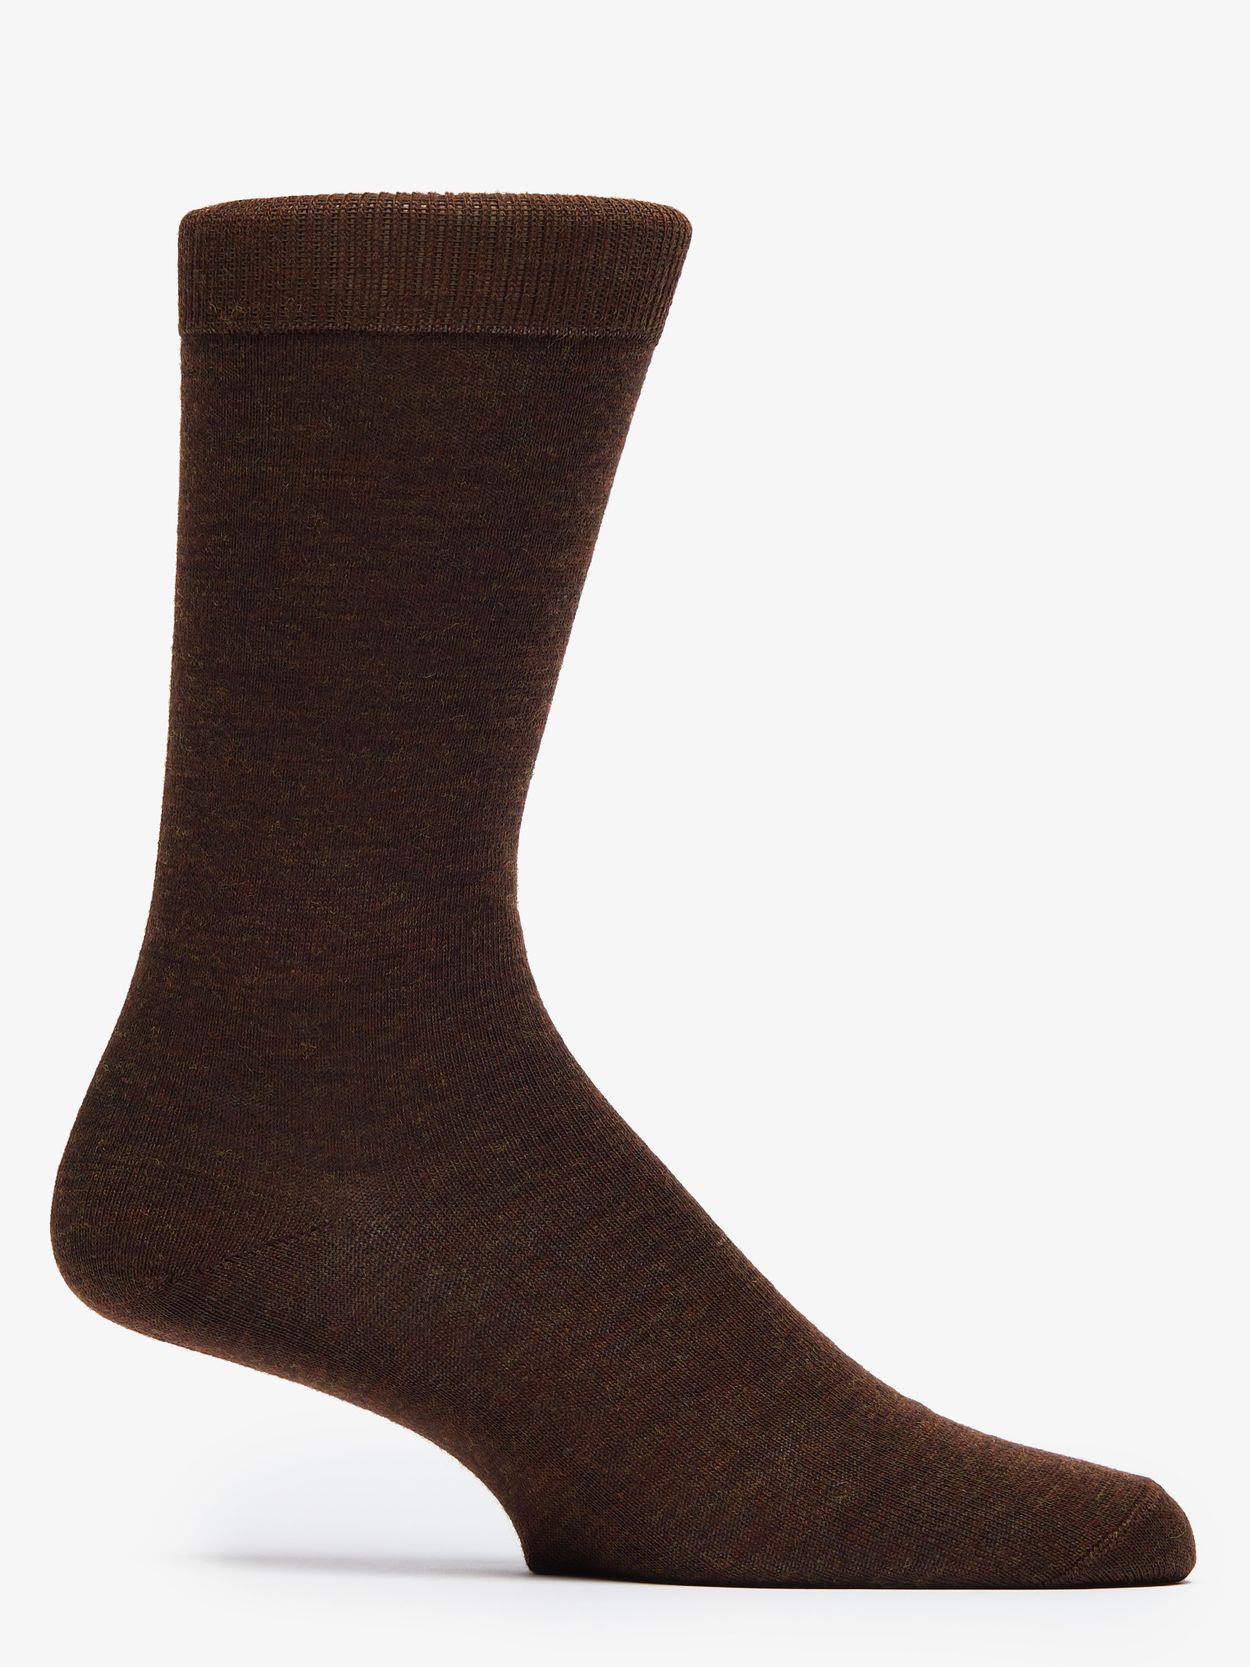 Brown Socks Tully